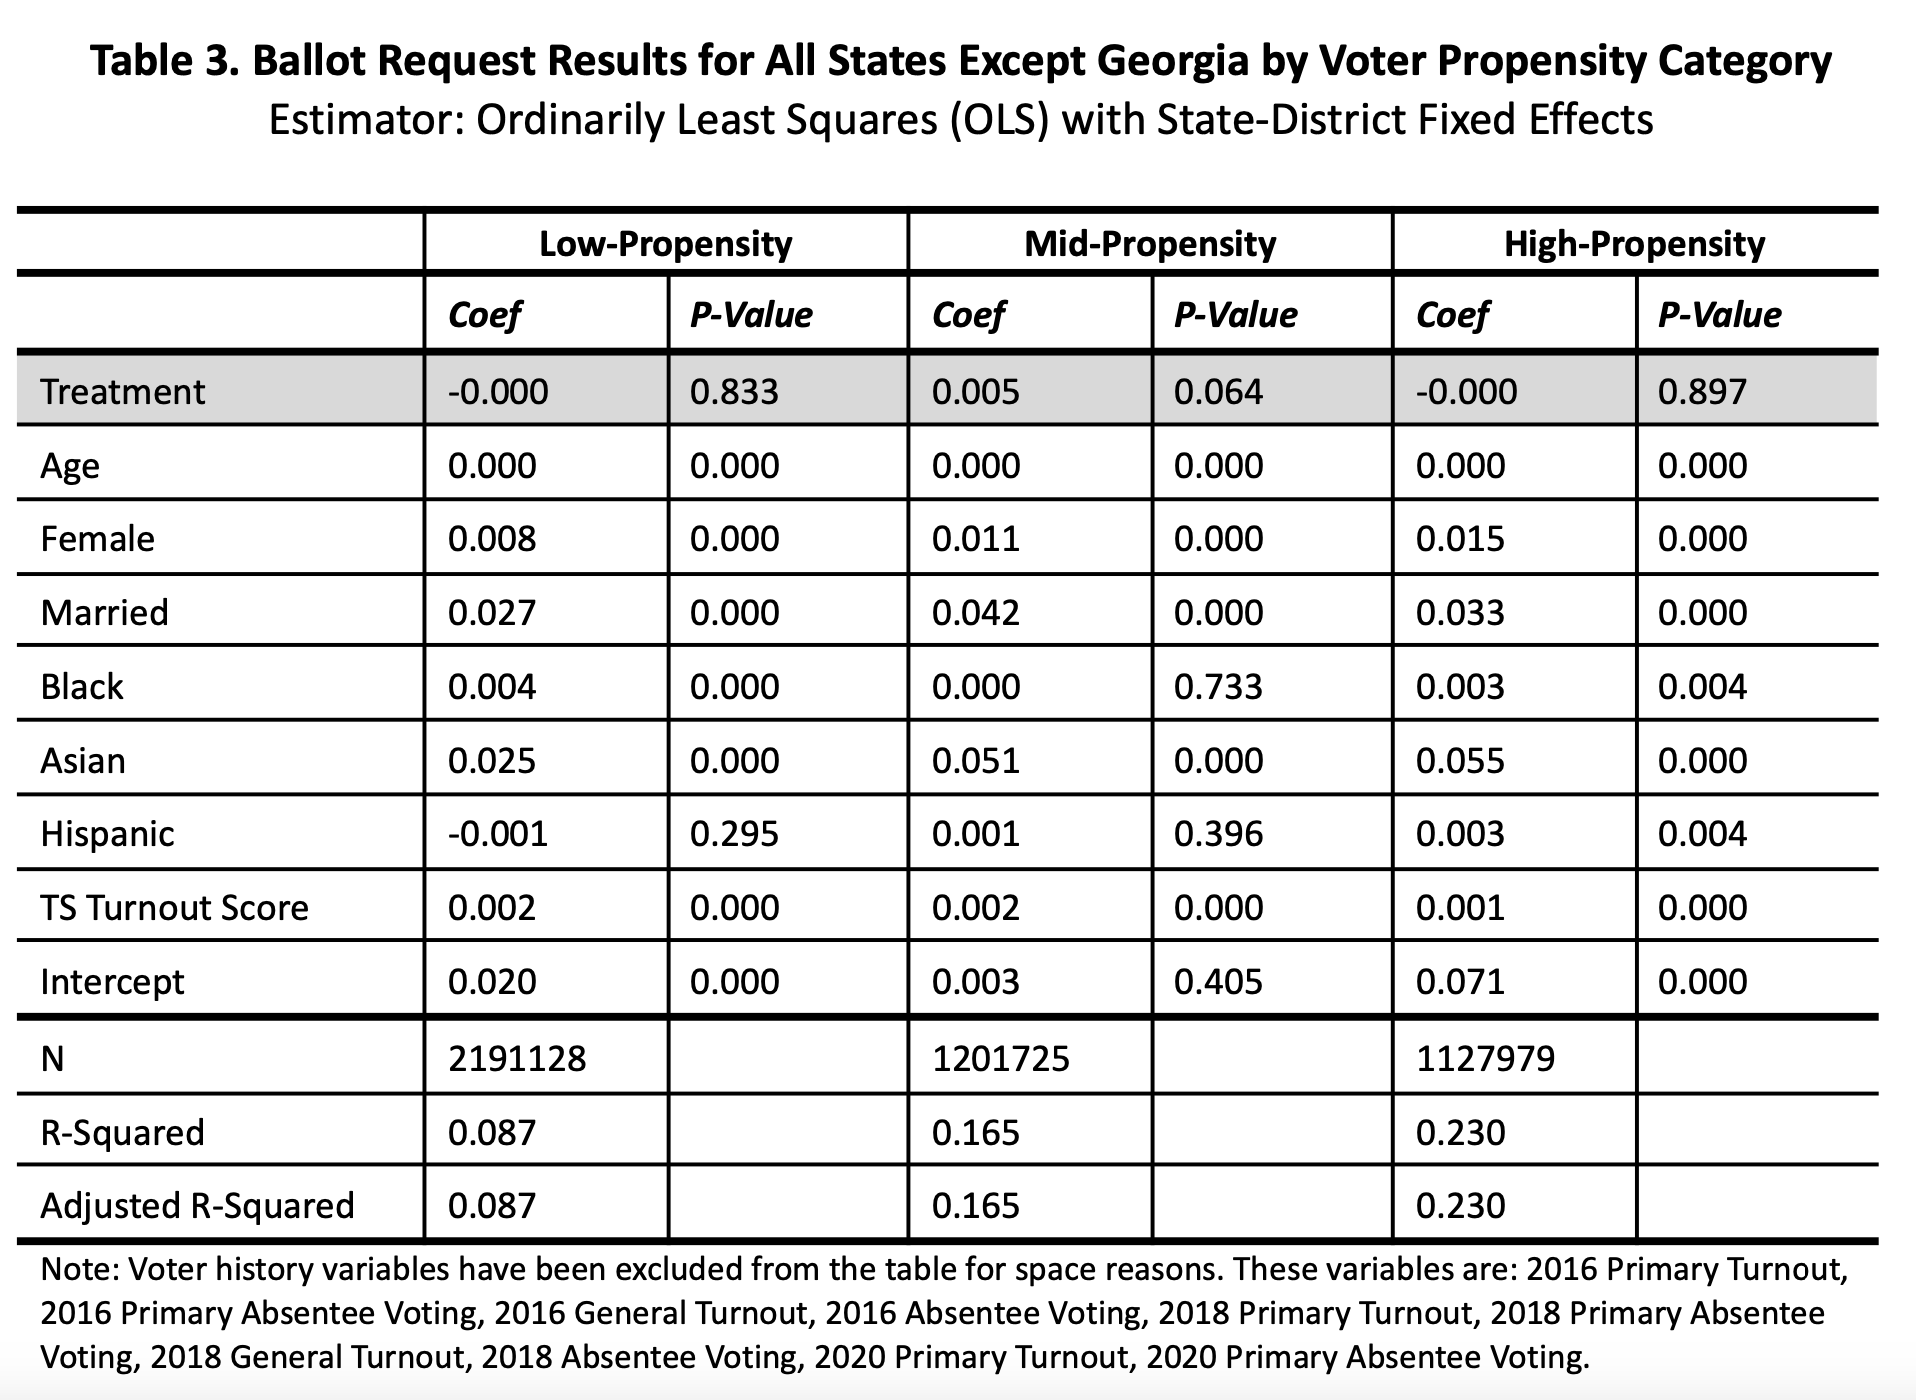 VoteAmerica’s November 2020 ballot request program